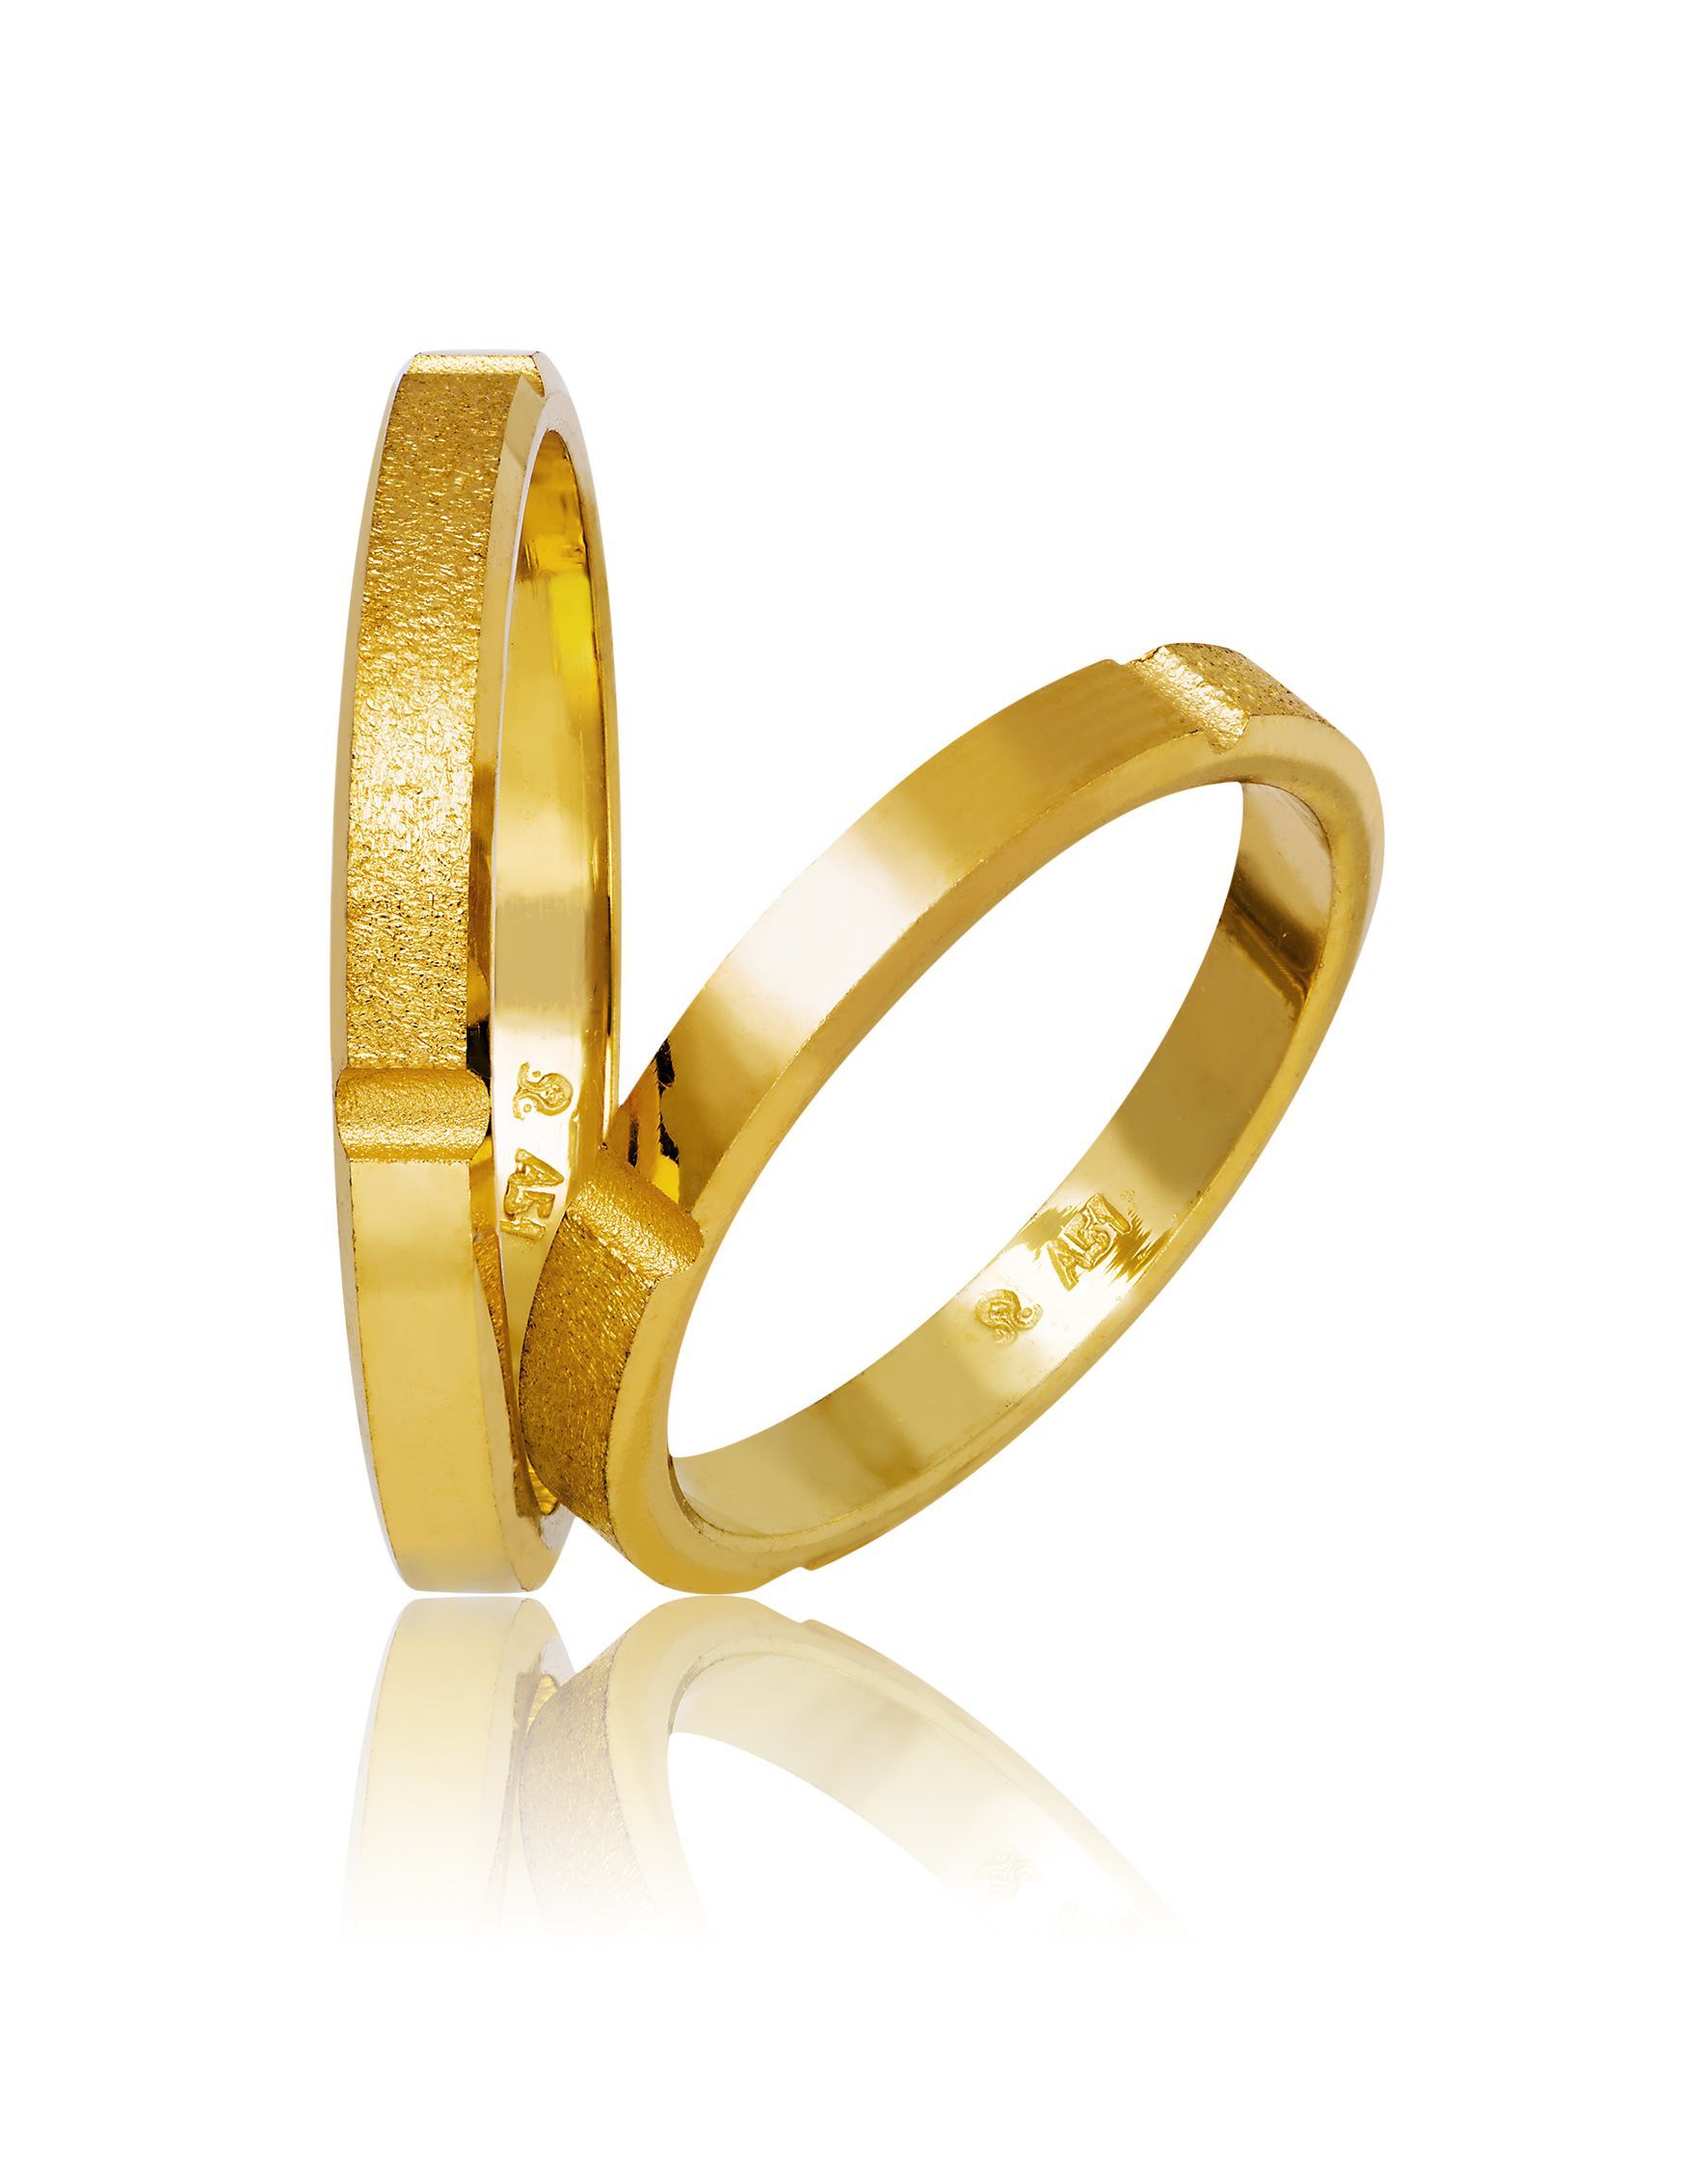 Golden wedding rings 3mm(code 744)